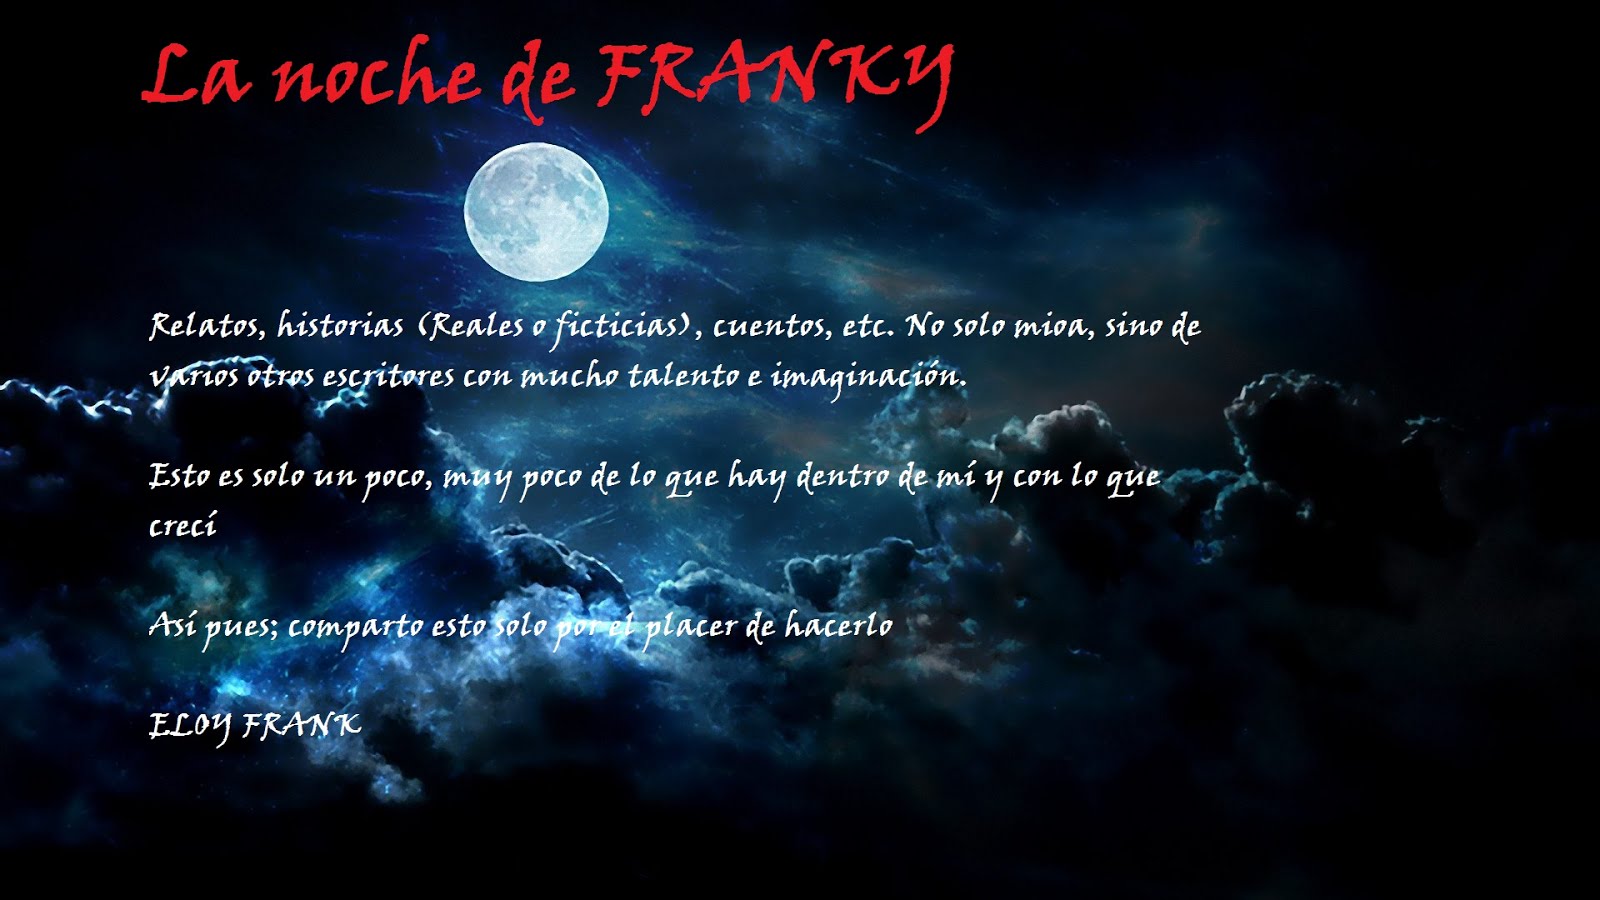 La noche de FRANKY